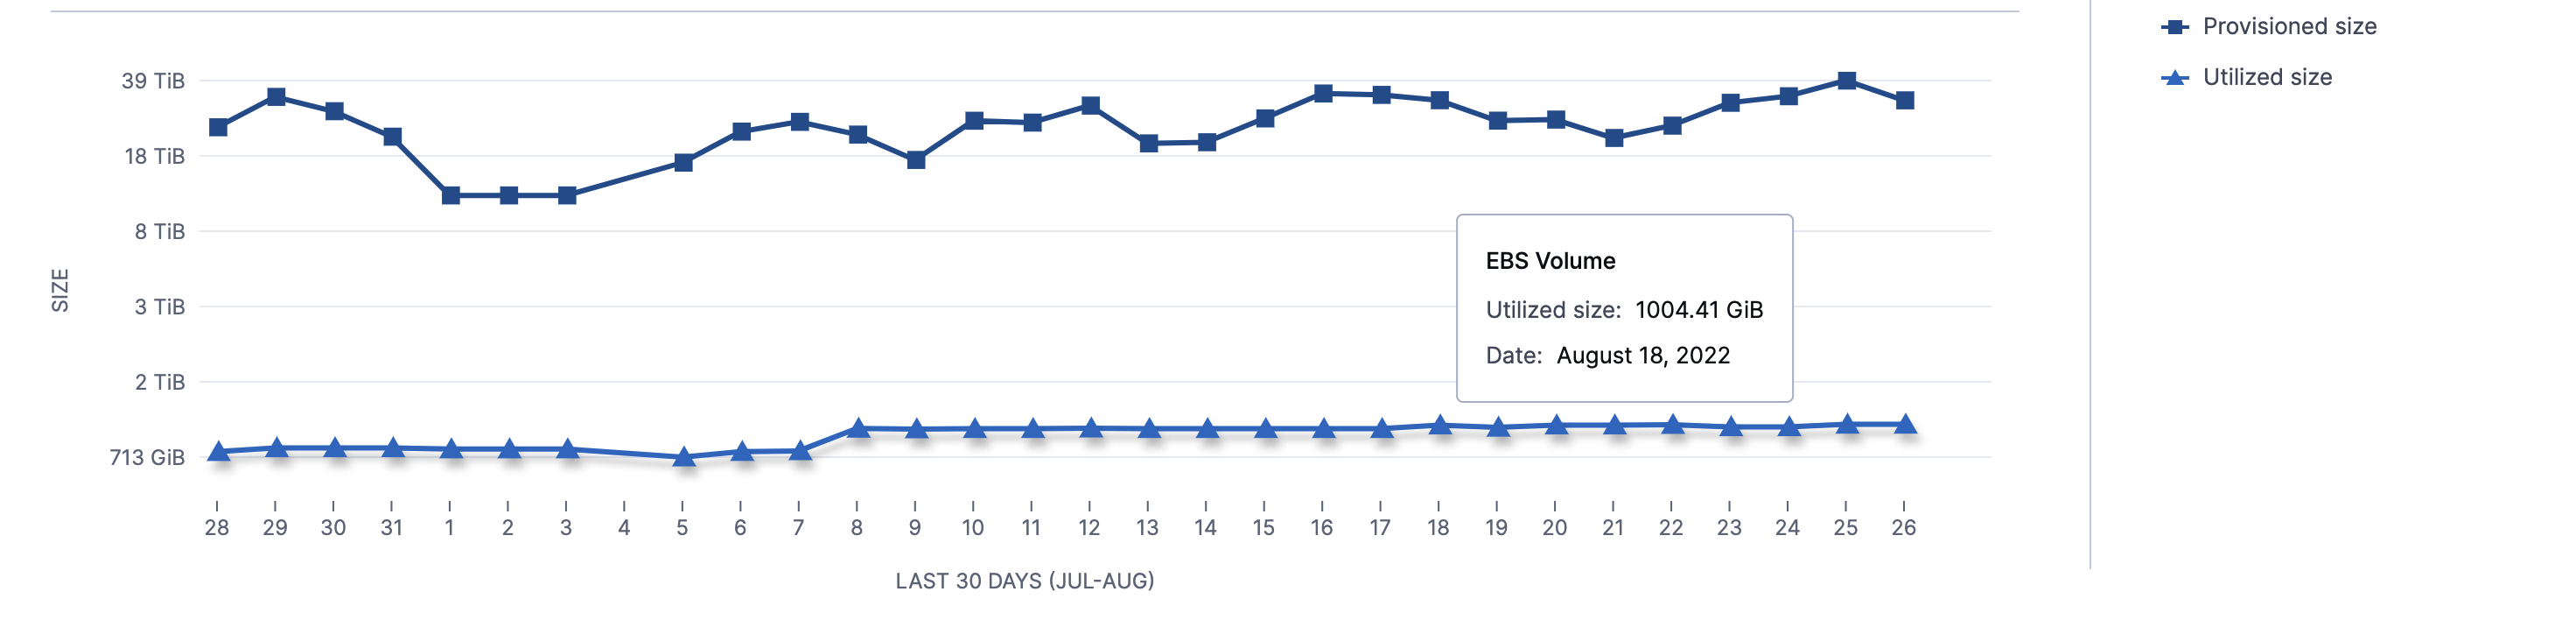 EBS volume last 30 days